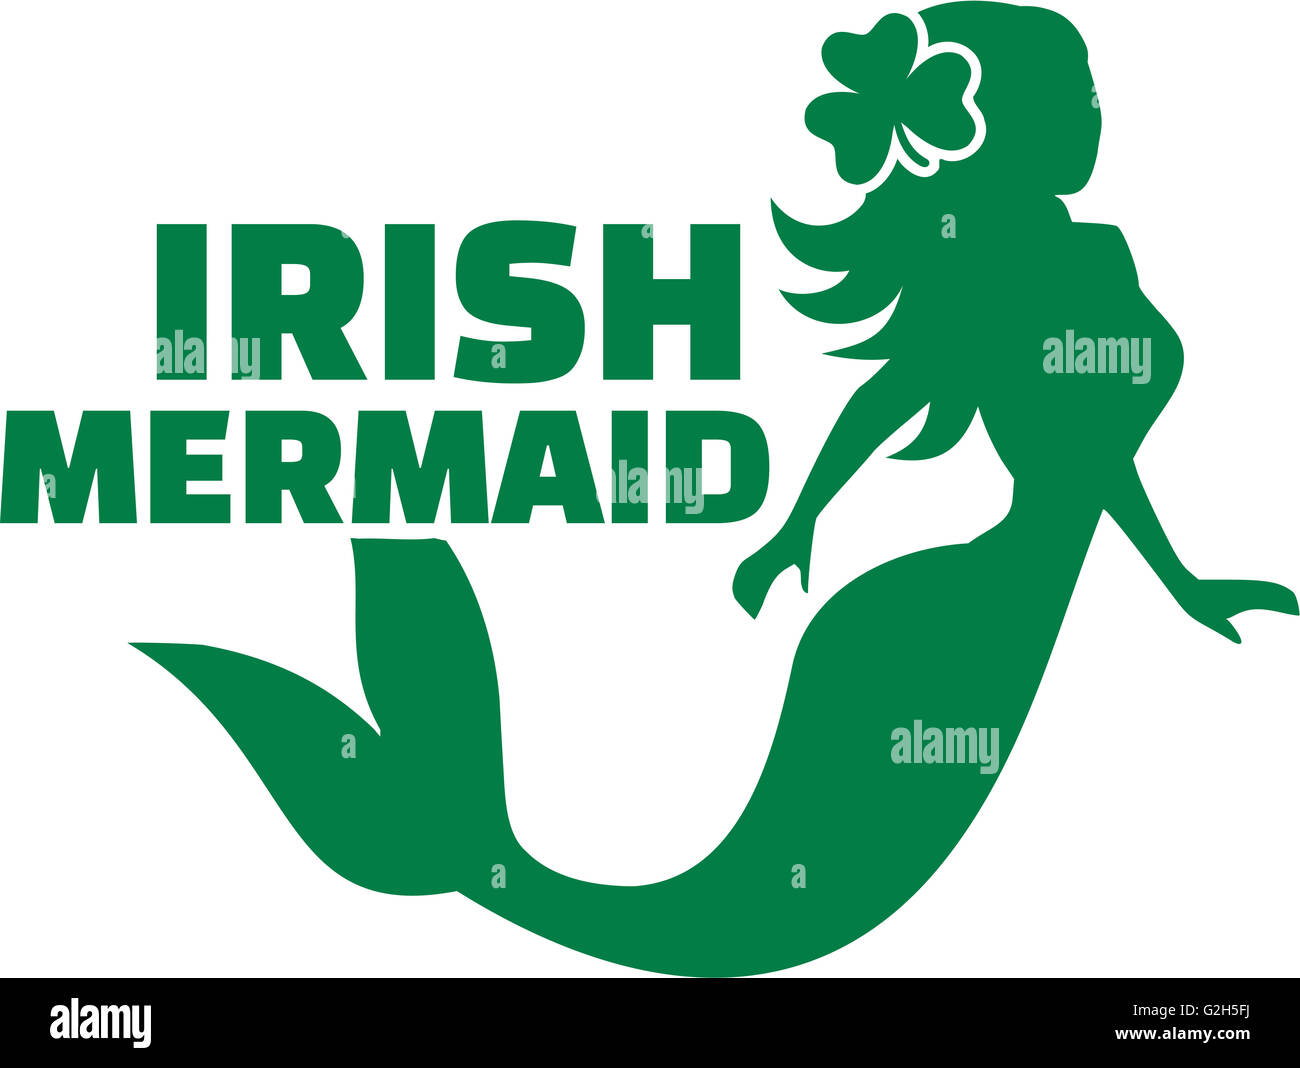 Irish mermaid Stock Photo